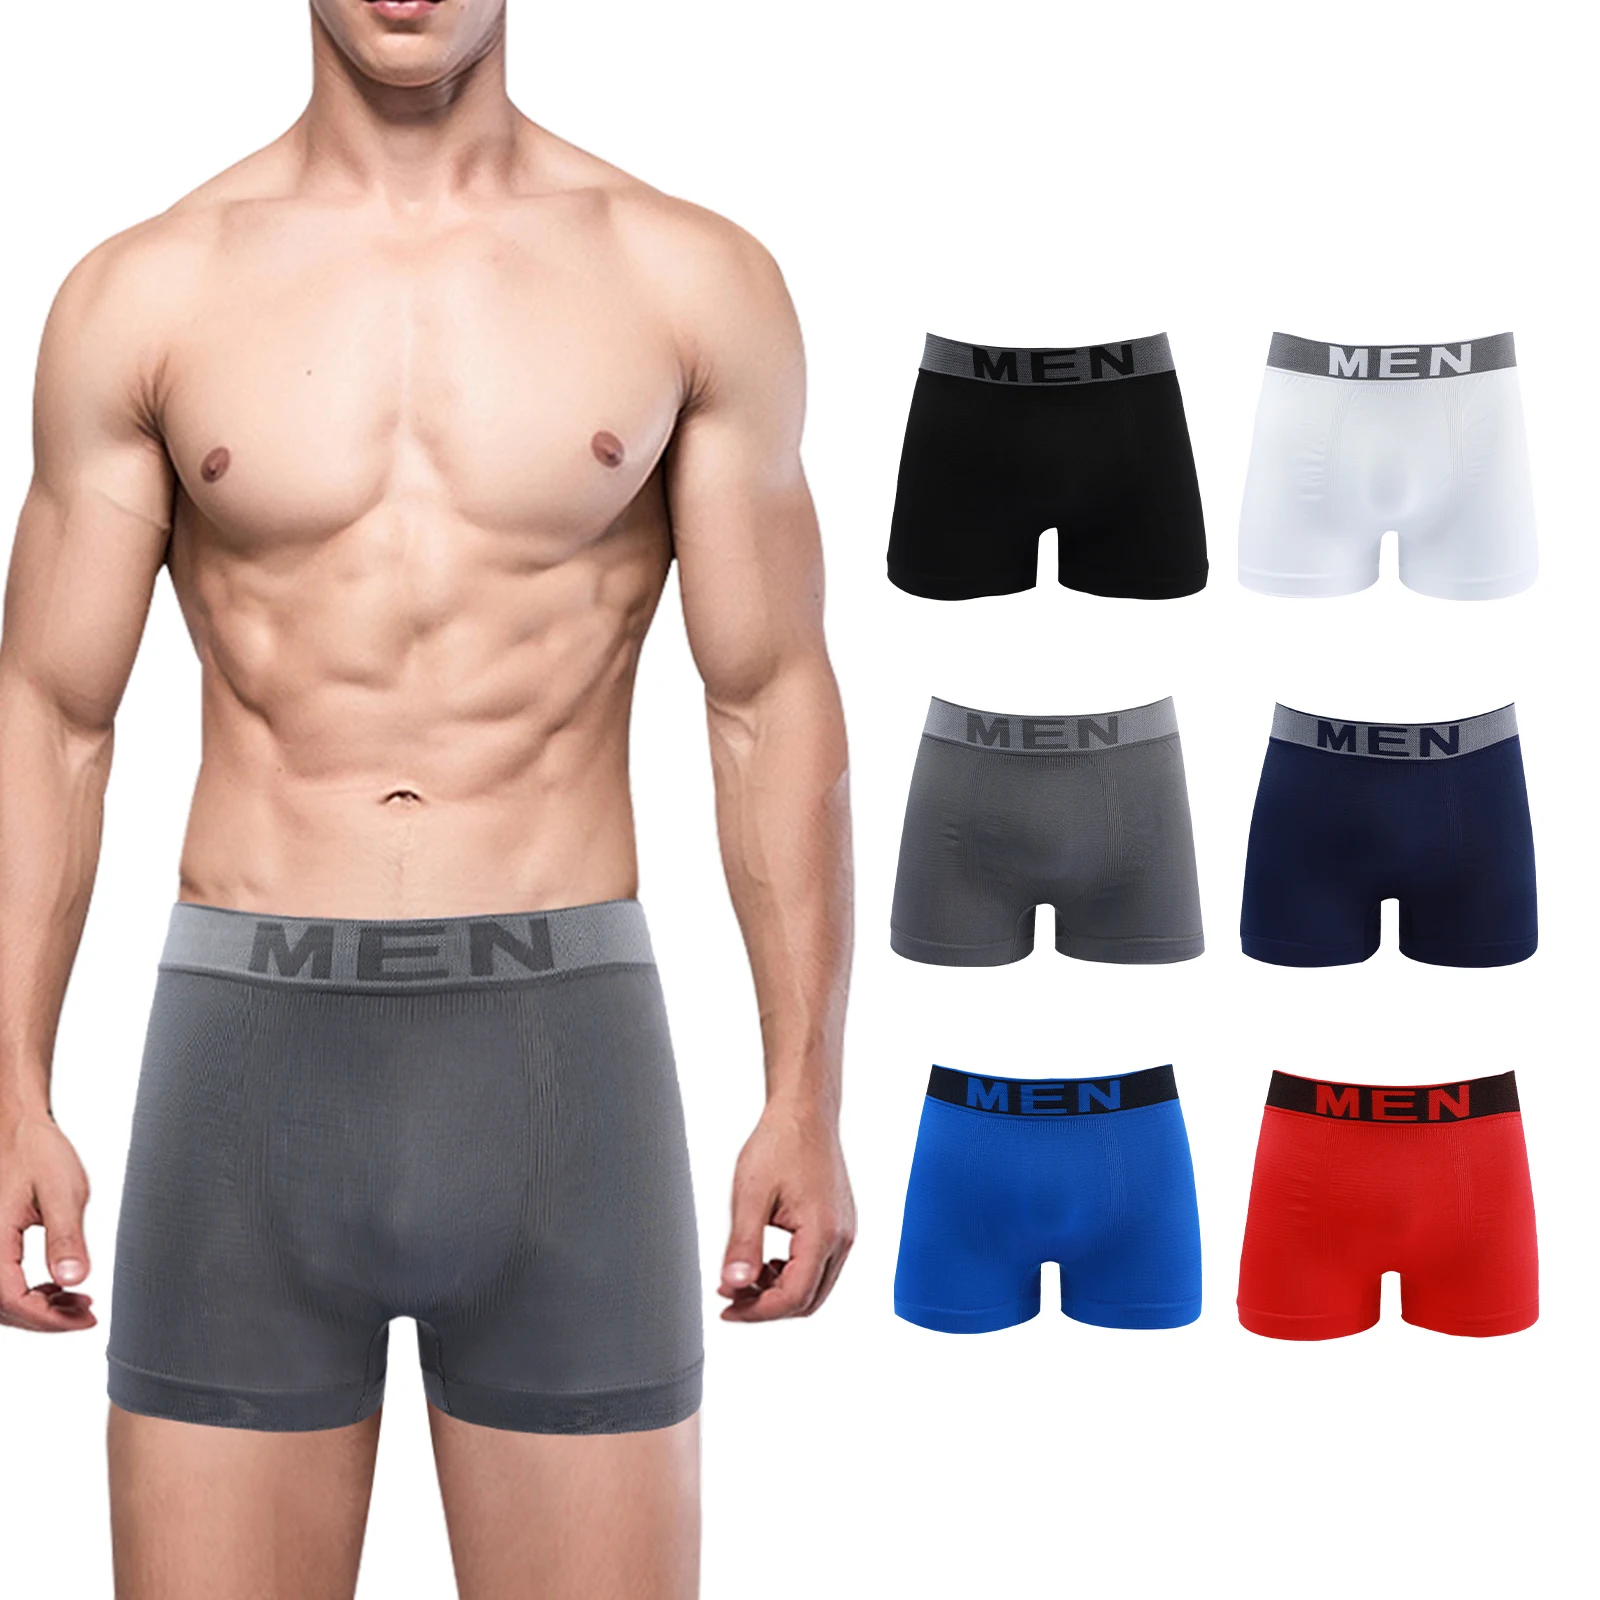 STEP ONE Mens Underwear Trunk Briefs - Underwear for Men, Moisture-Wicking,  3D Pouch + No Ride Up Trunk Briefs for Men